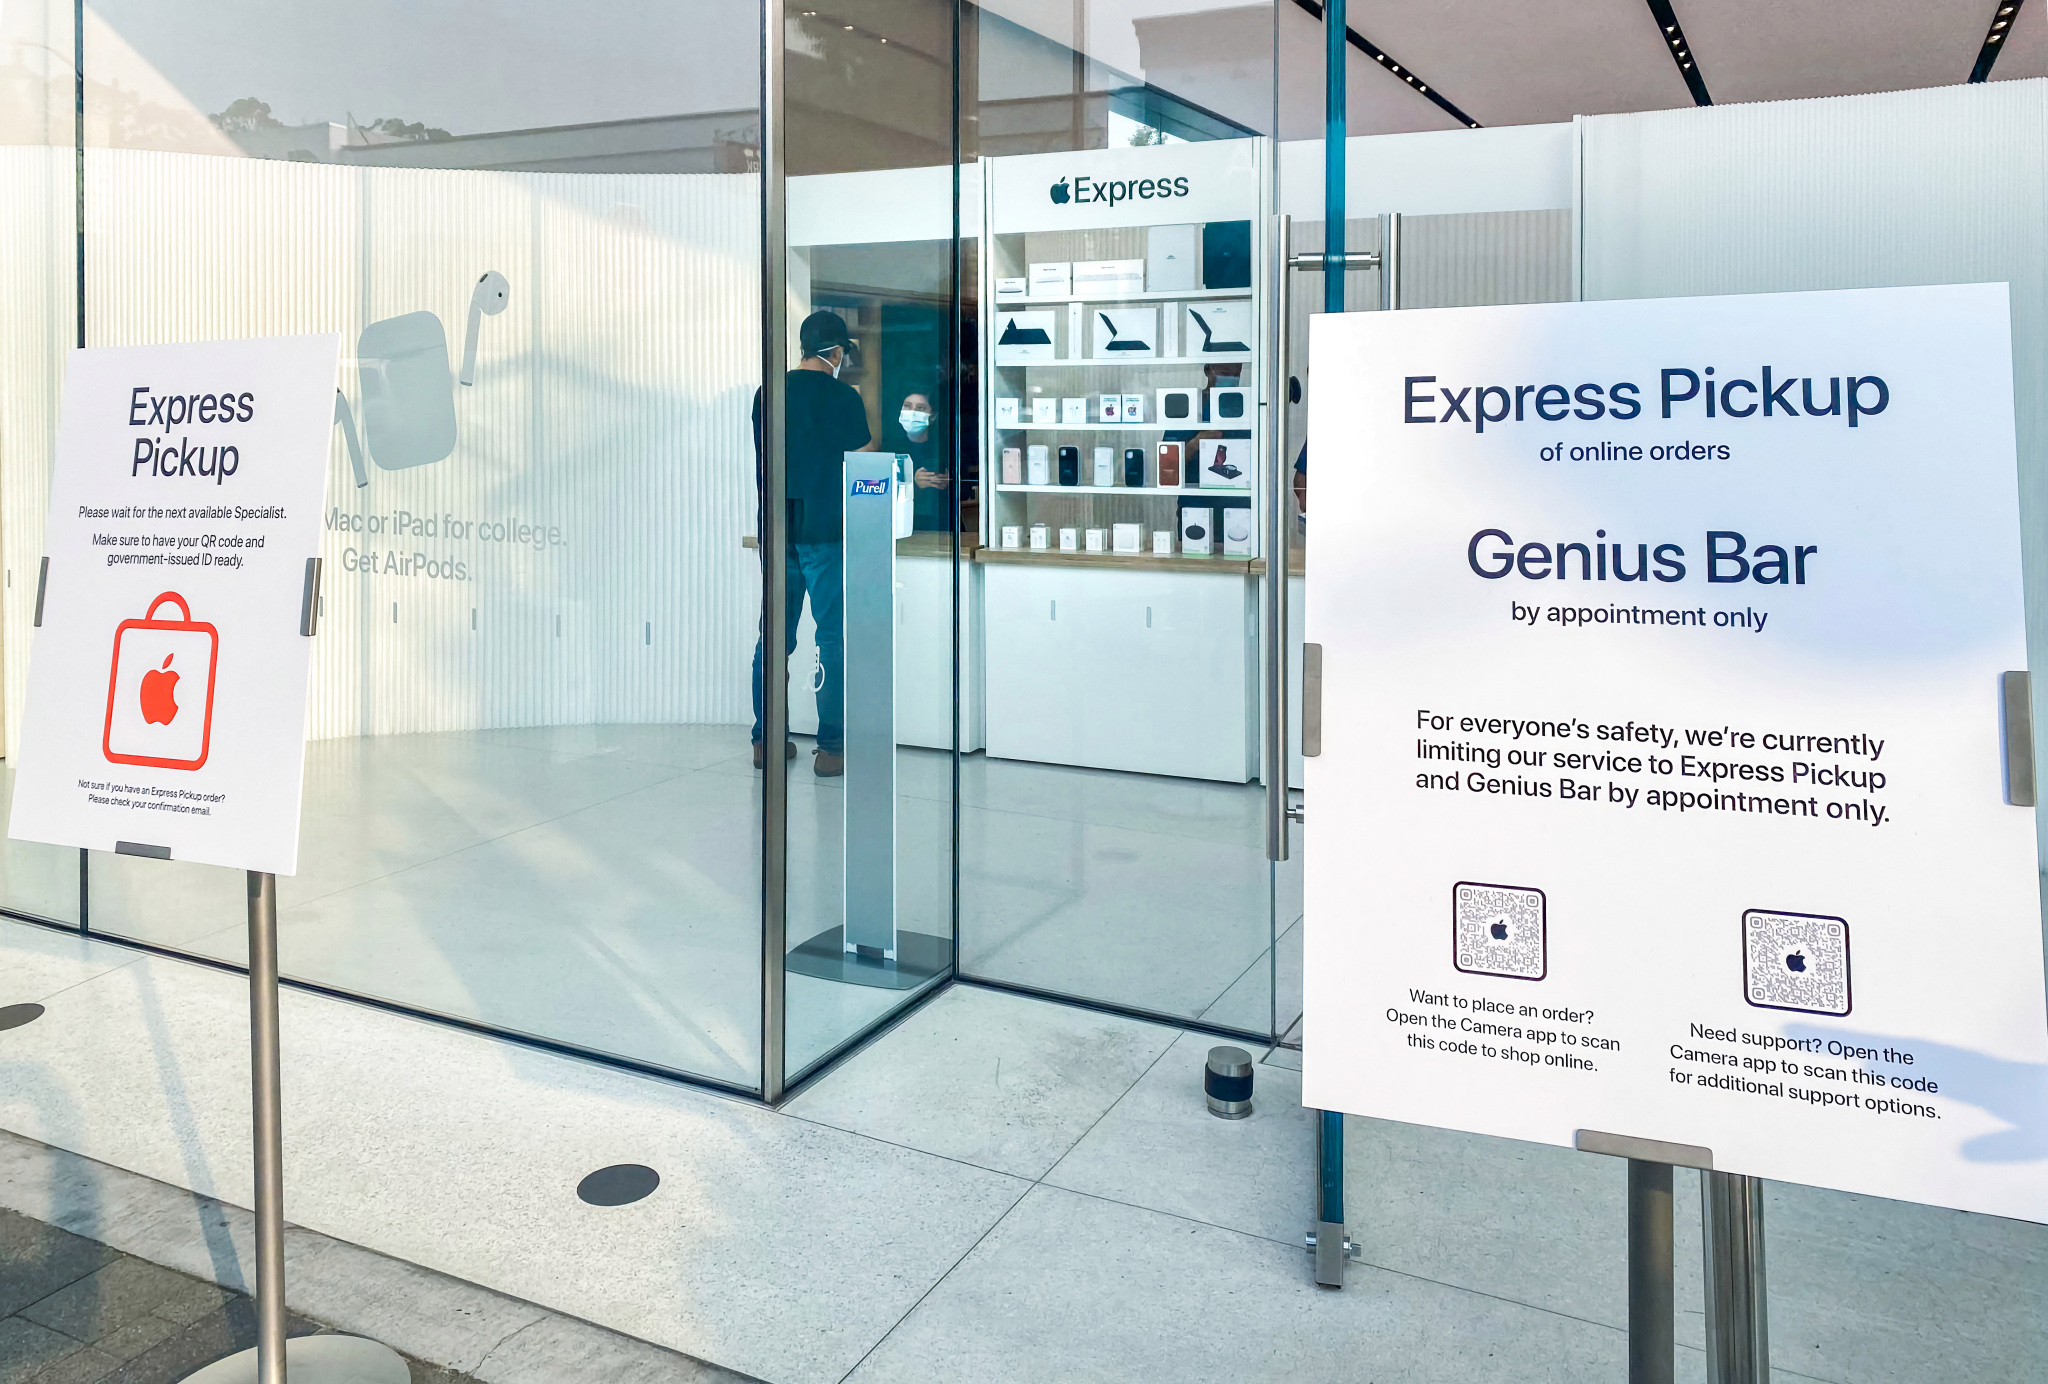 الأخبار 15 سبتمبر 2020 Apple اختبر Express Store: استلم طلباتك عبر الإنترنت بسرعة